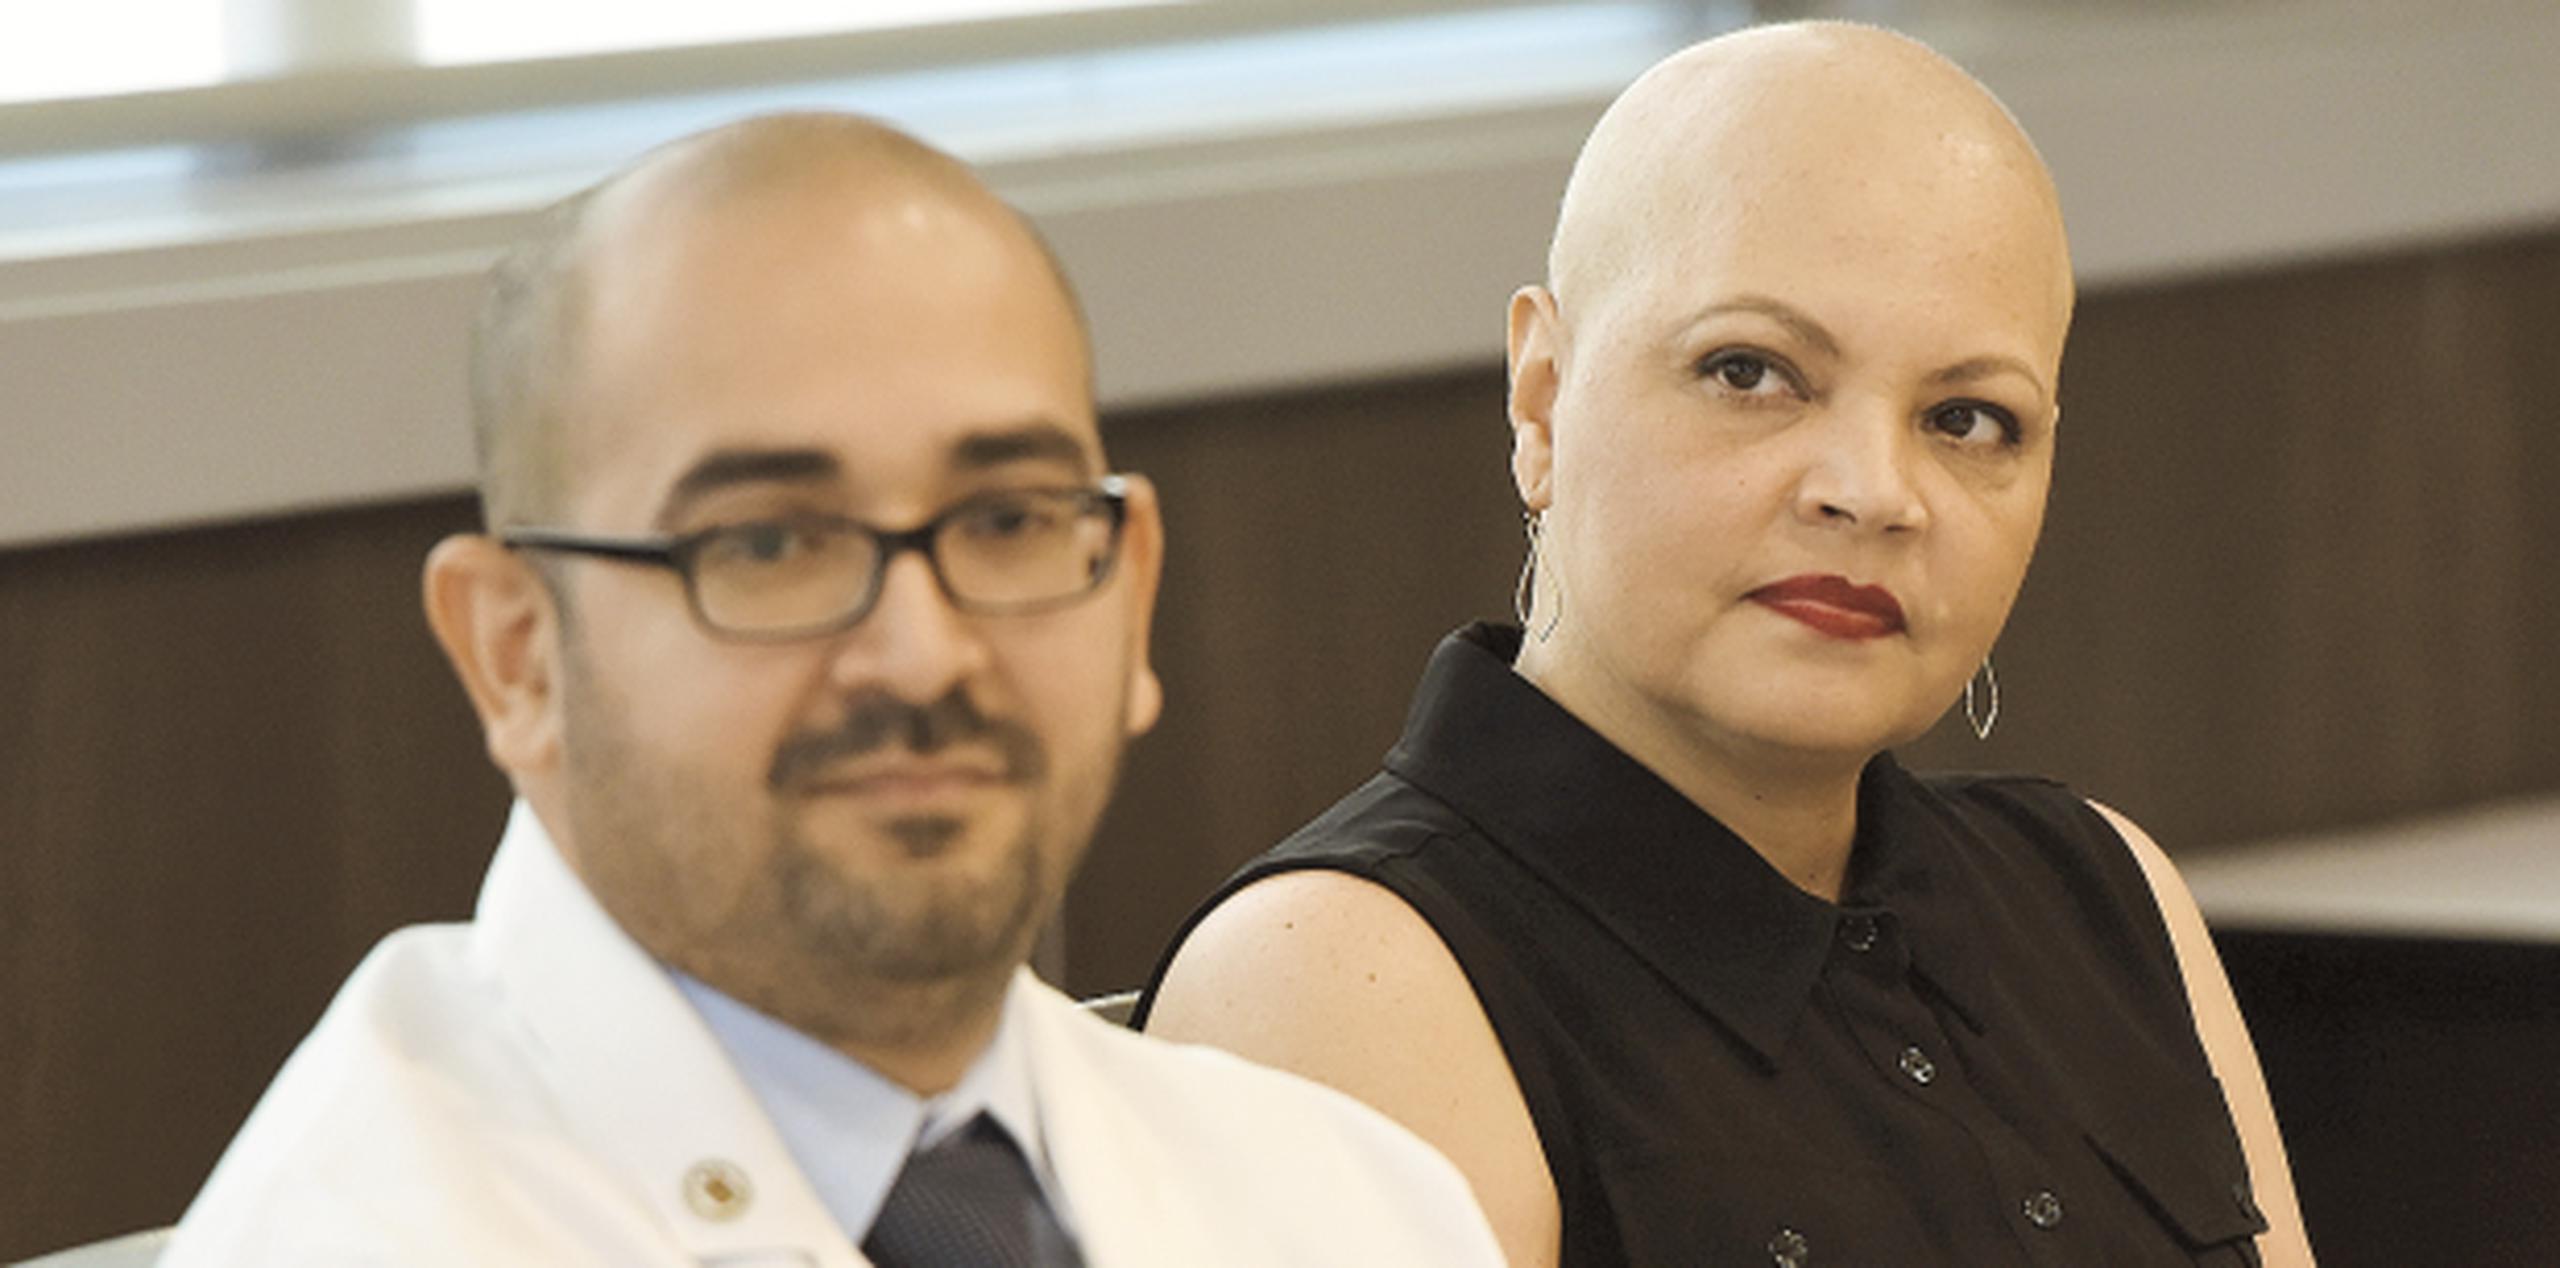 El doctor Alexis Cruz Chacón, junto a Cindy del Valle, quien fue la primera paciente en recibir un trasplante alogénico en el País. (andre.kang@gfrmedia.com)